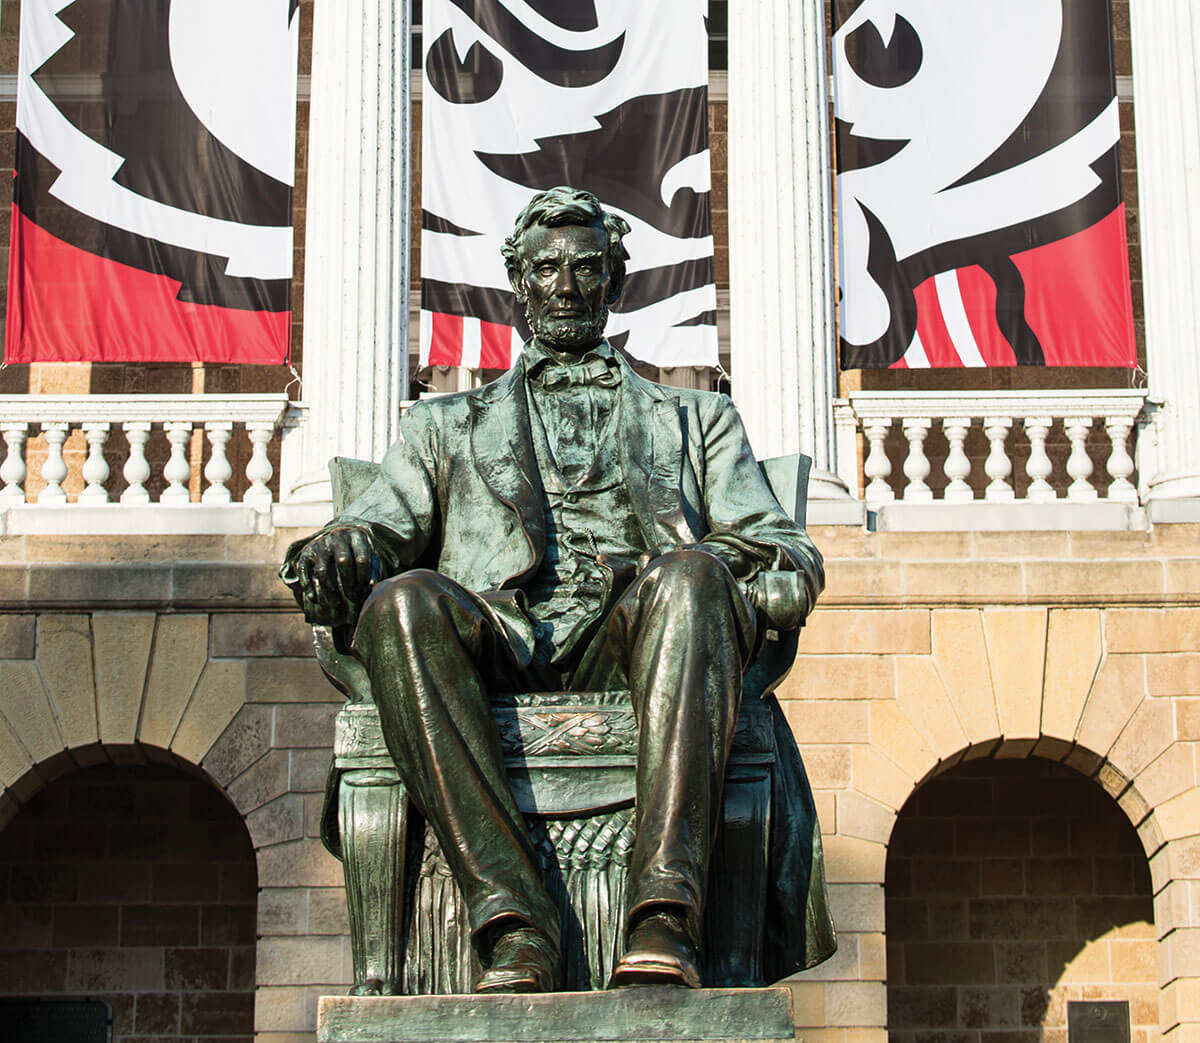 Abe Lincoln statue